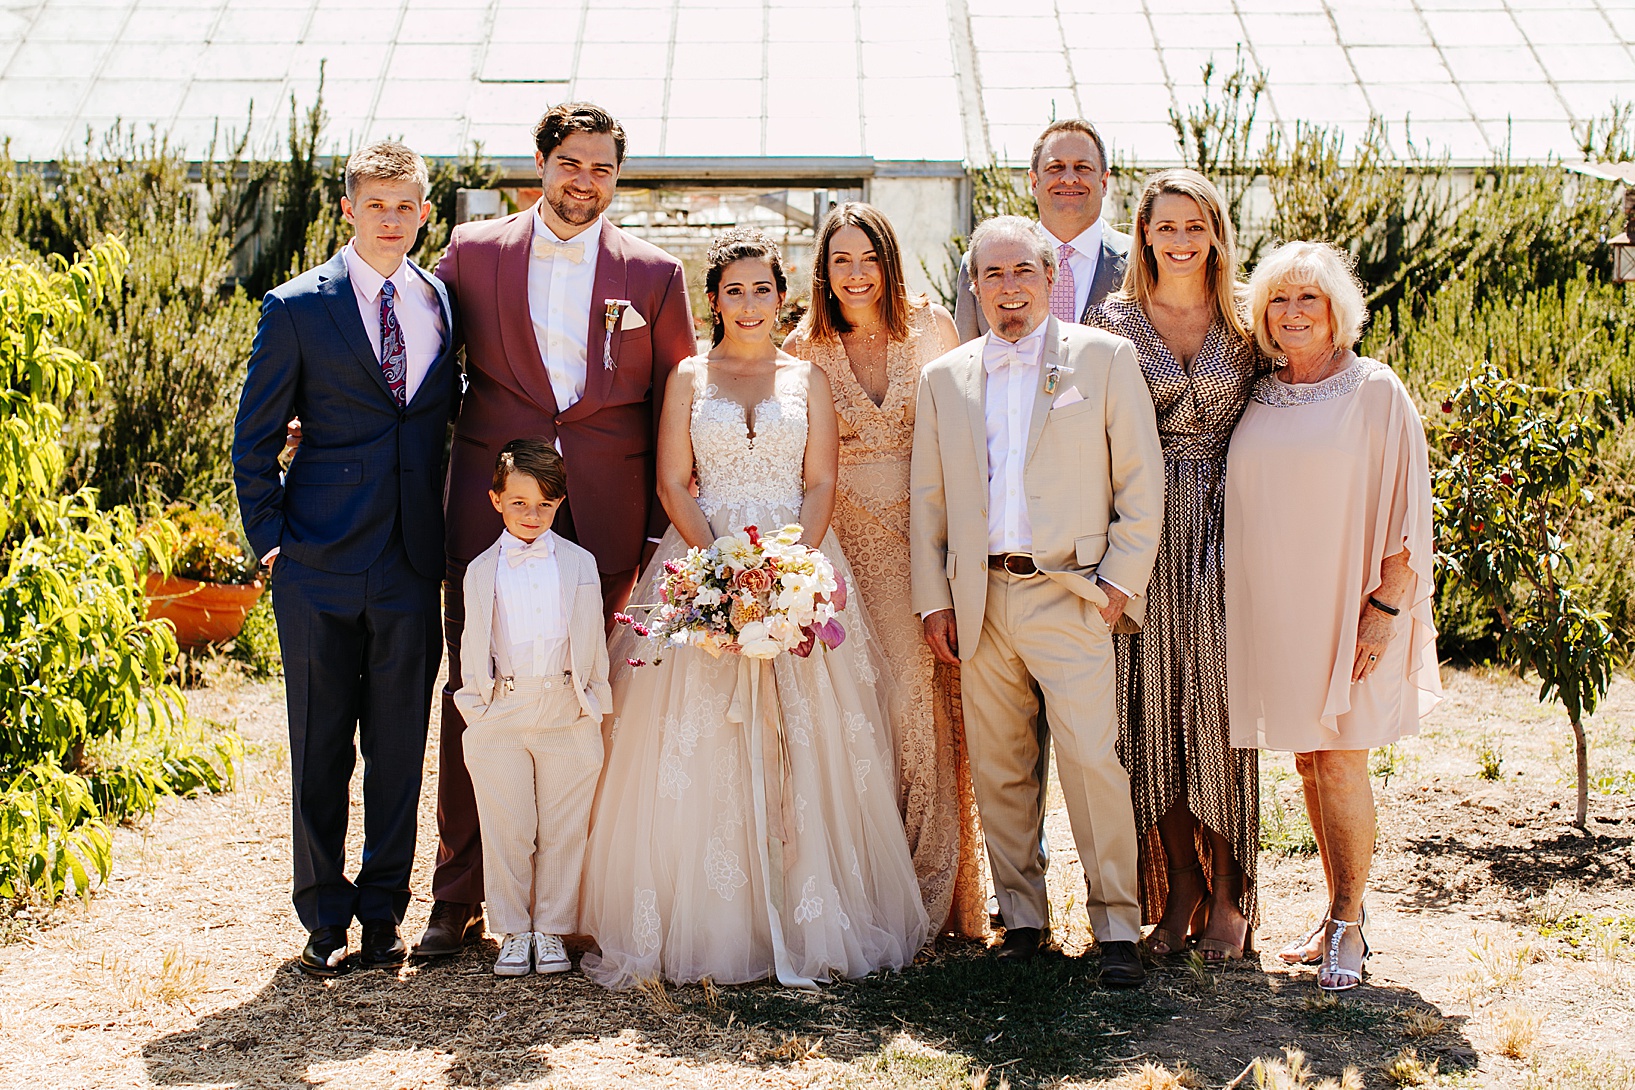 Family Photos for Goleta Wedding at Dos Pueblos Orchid Farm